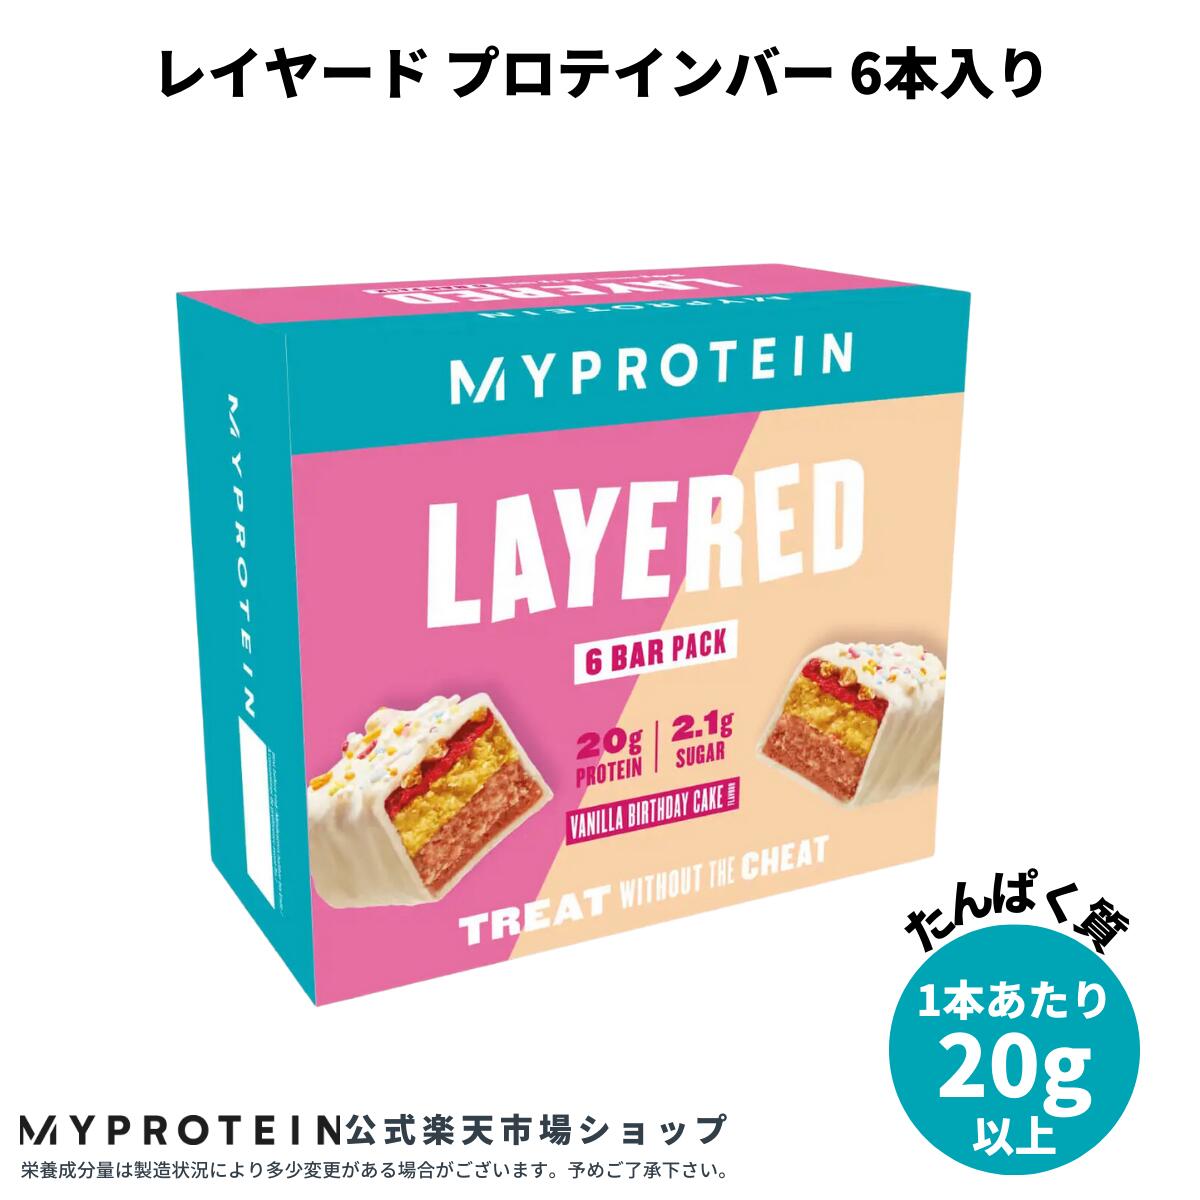 マイプロテイン レイヤード プロテイン バー 6本入り 【Myprotein】【楽天海外通販】 マイプロテイン 